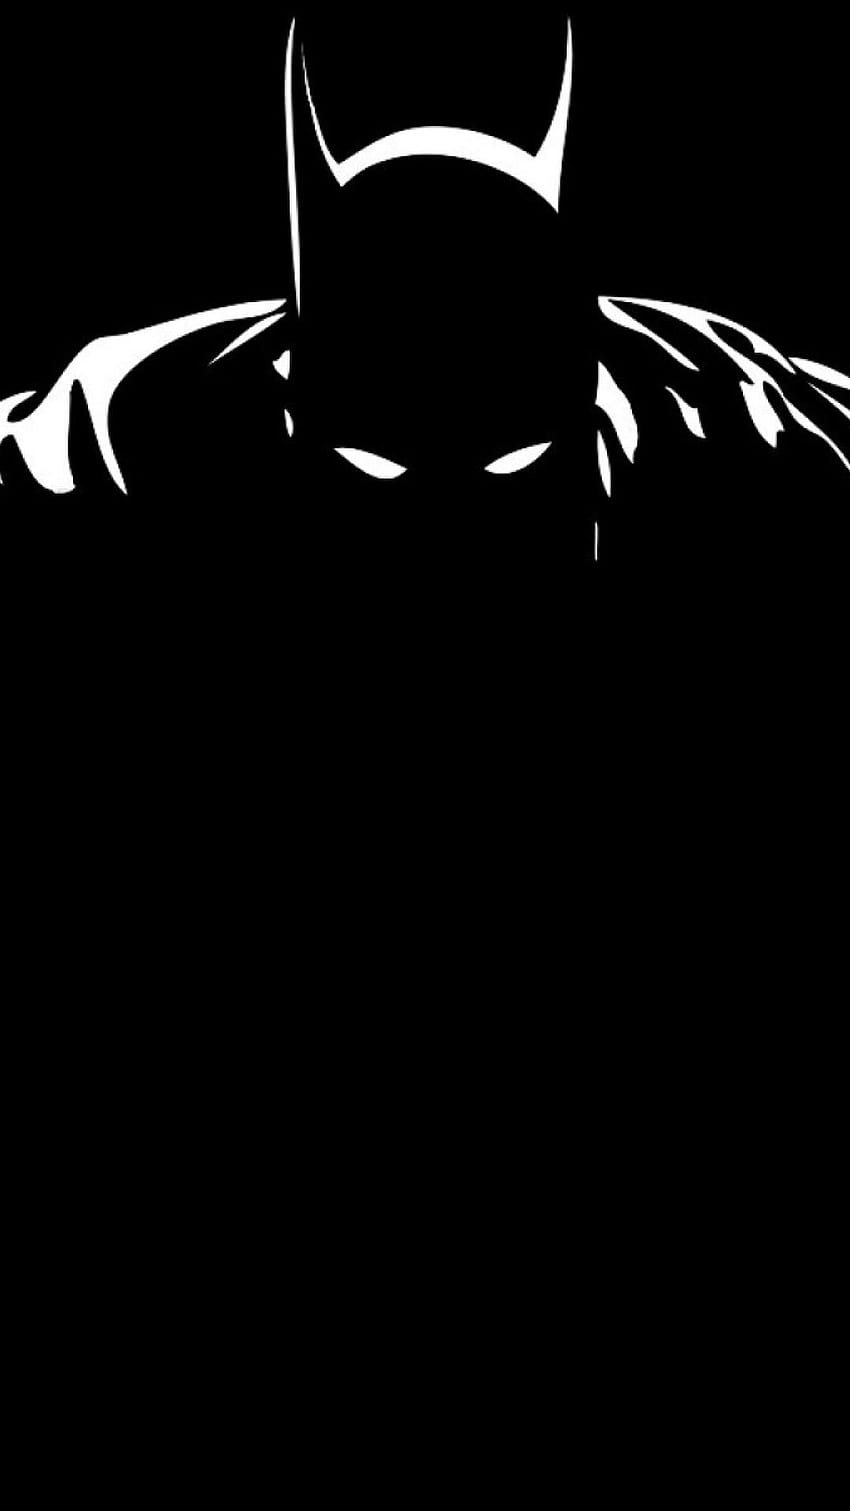 バットマンブラックアンドホワイトブラックiphone 6プラス. バットマン iphone、バットマン、スーパーヒーロー HD電話の壁紙